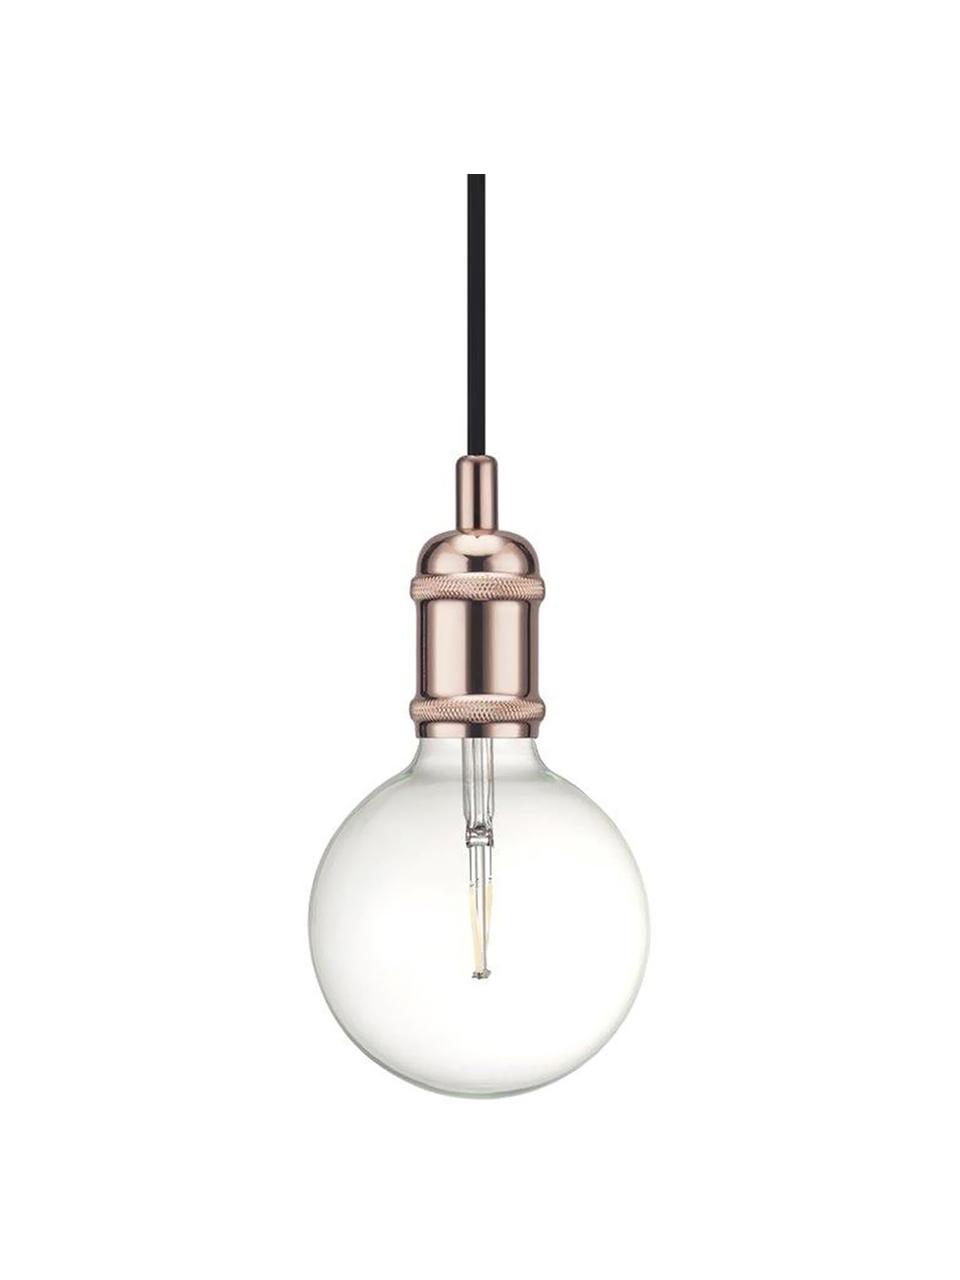 Petite suspension en cuivre ampoule nue Avra, Cuivre